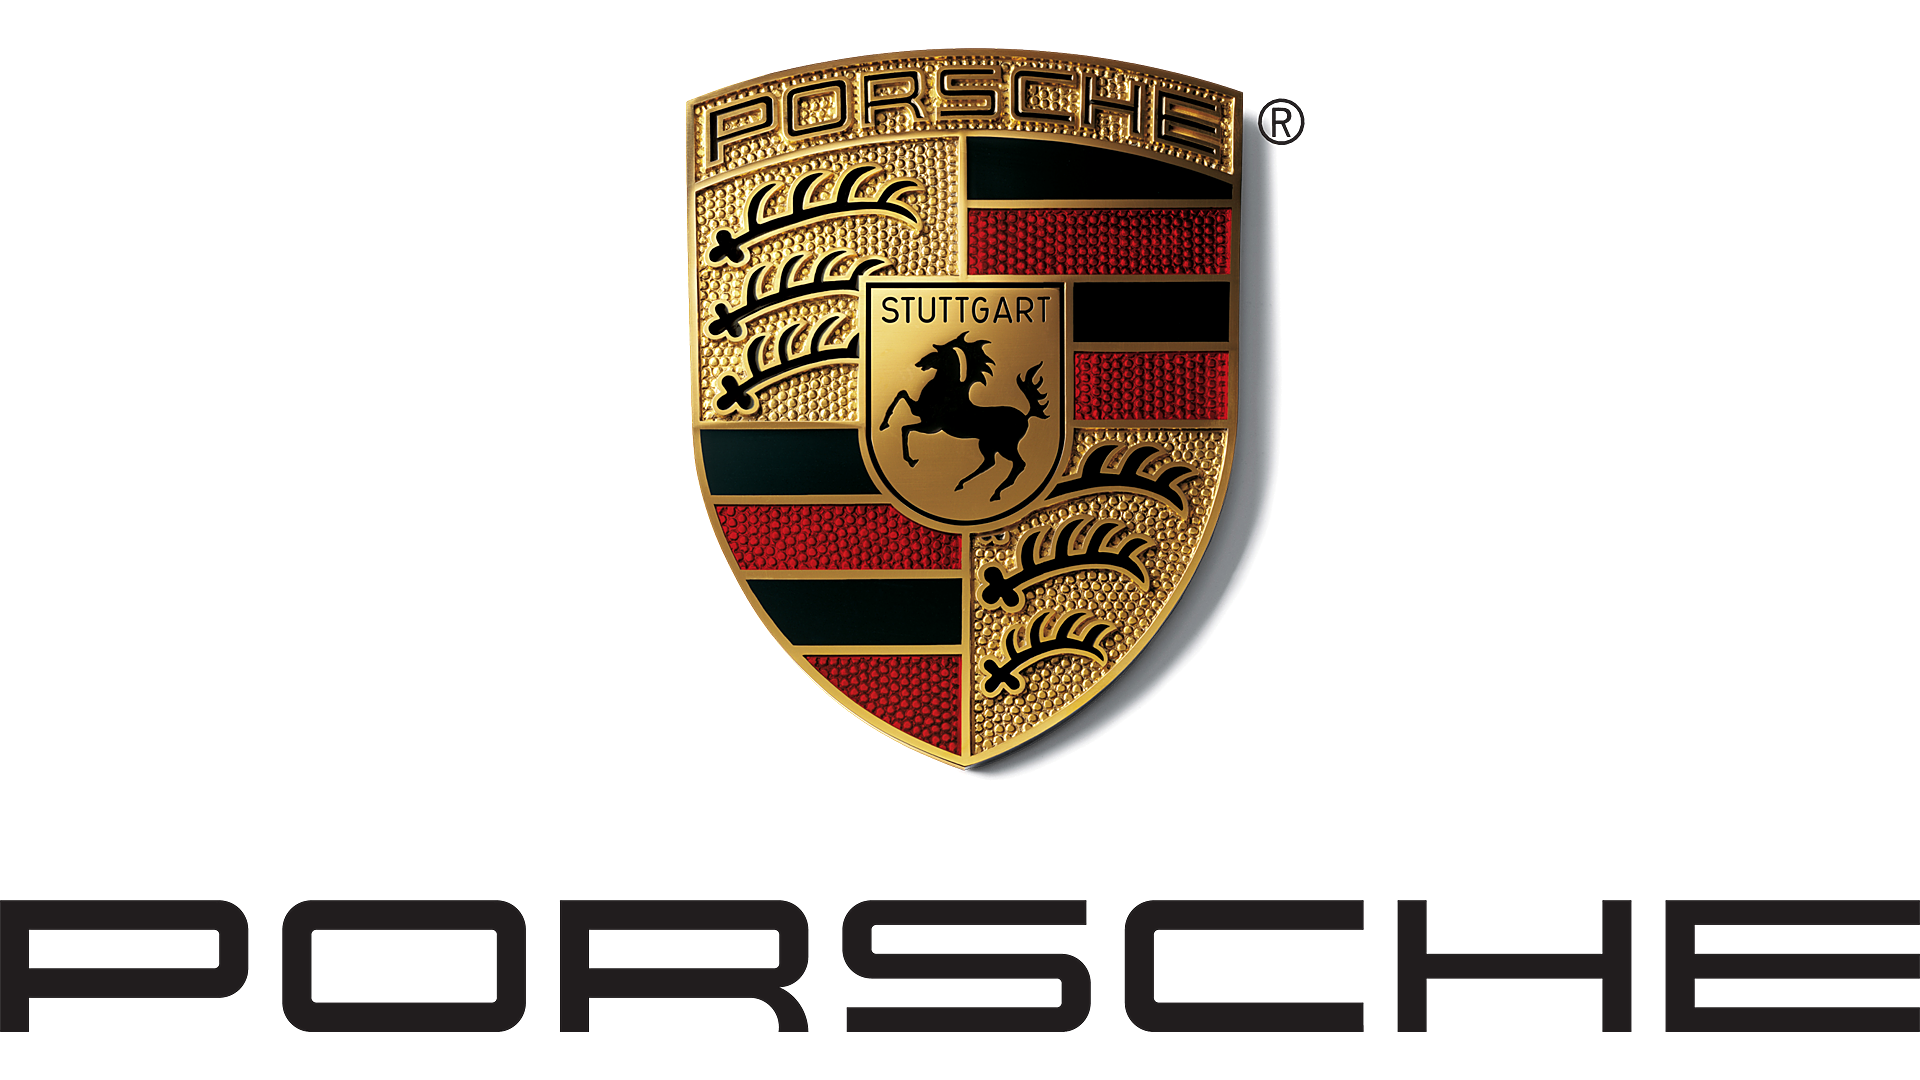 Roblox Porsche John Roblox Gorilla Roblox Id - john roblox gorilla id